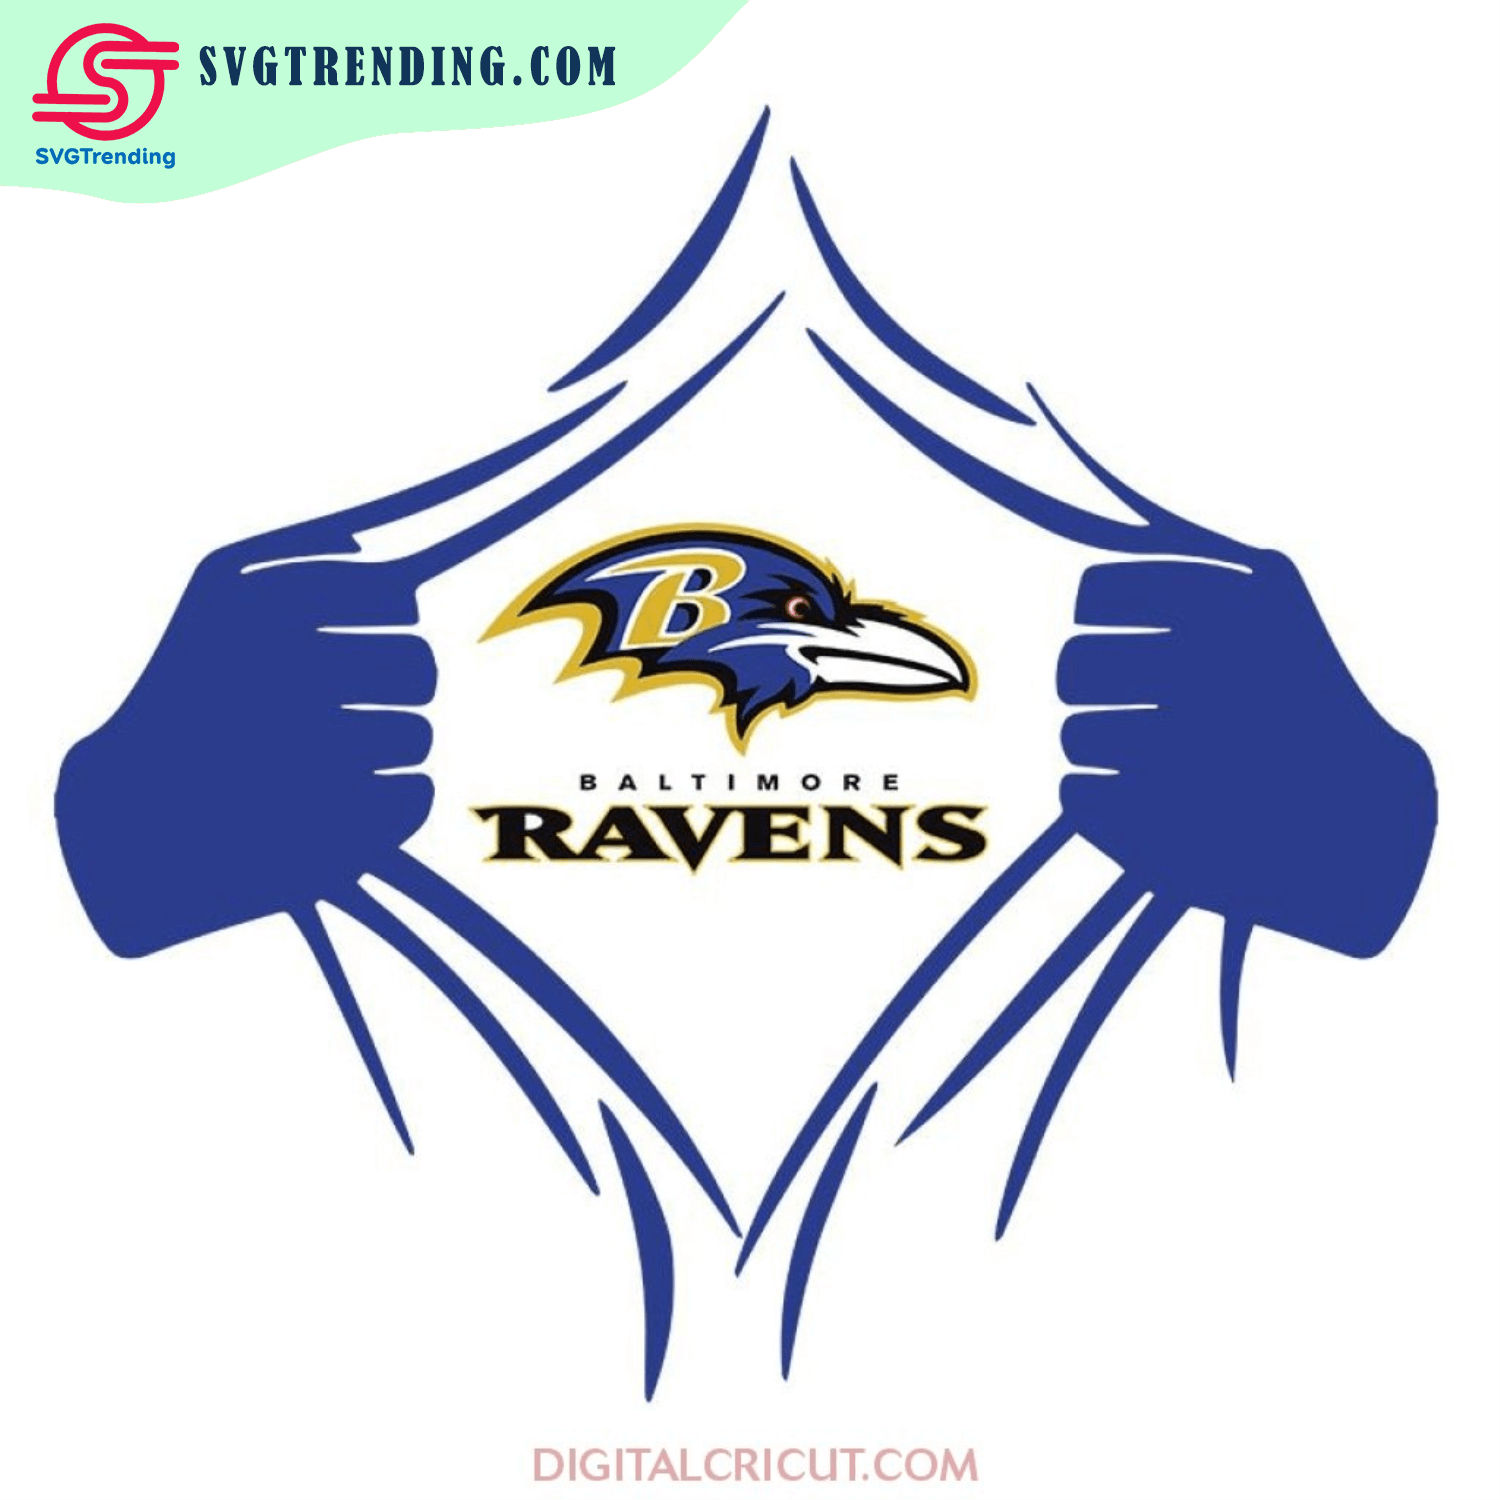 Baltimore Ravens Svg, Raven Logo Svg, NFL Svg, Sport Svg, Football Svg ...